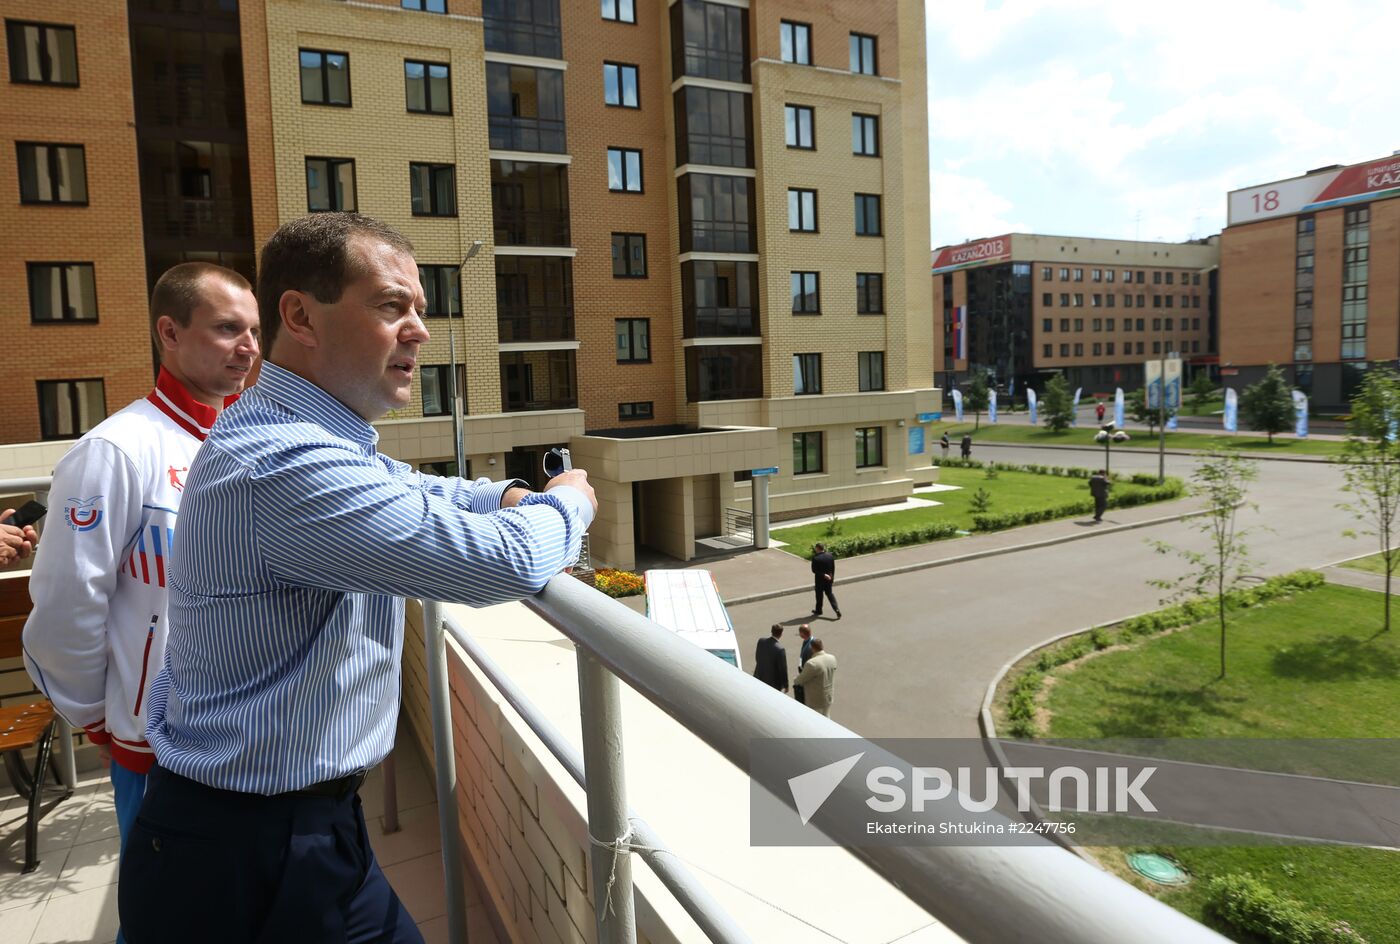 Dmitry Medvedev attends 2013 Universiade in Kazan